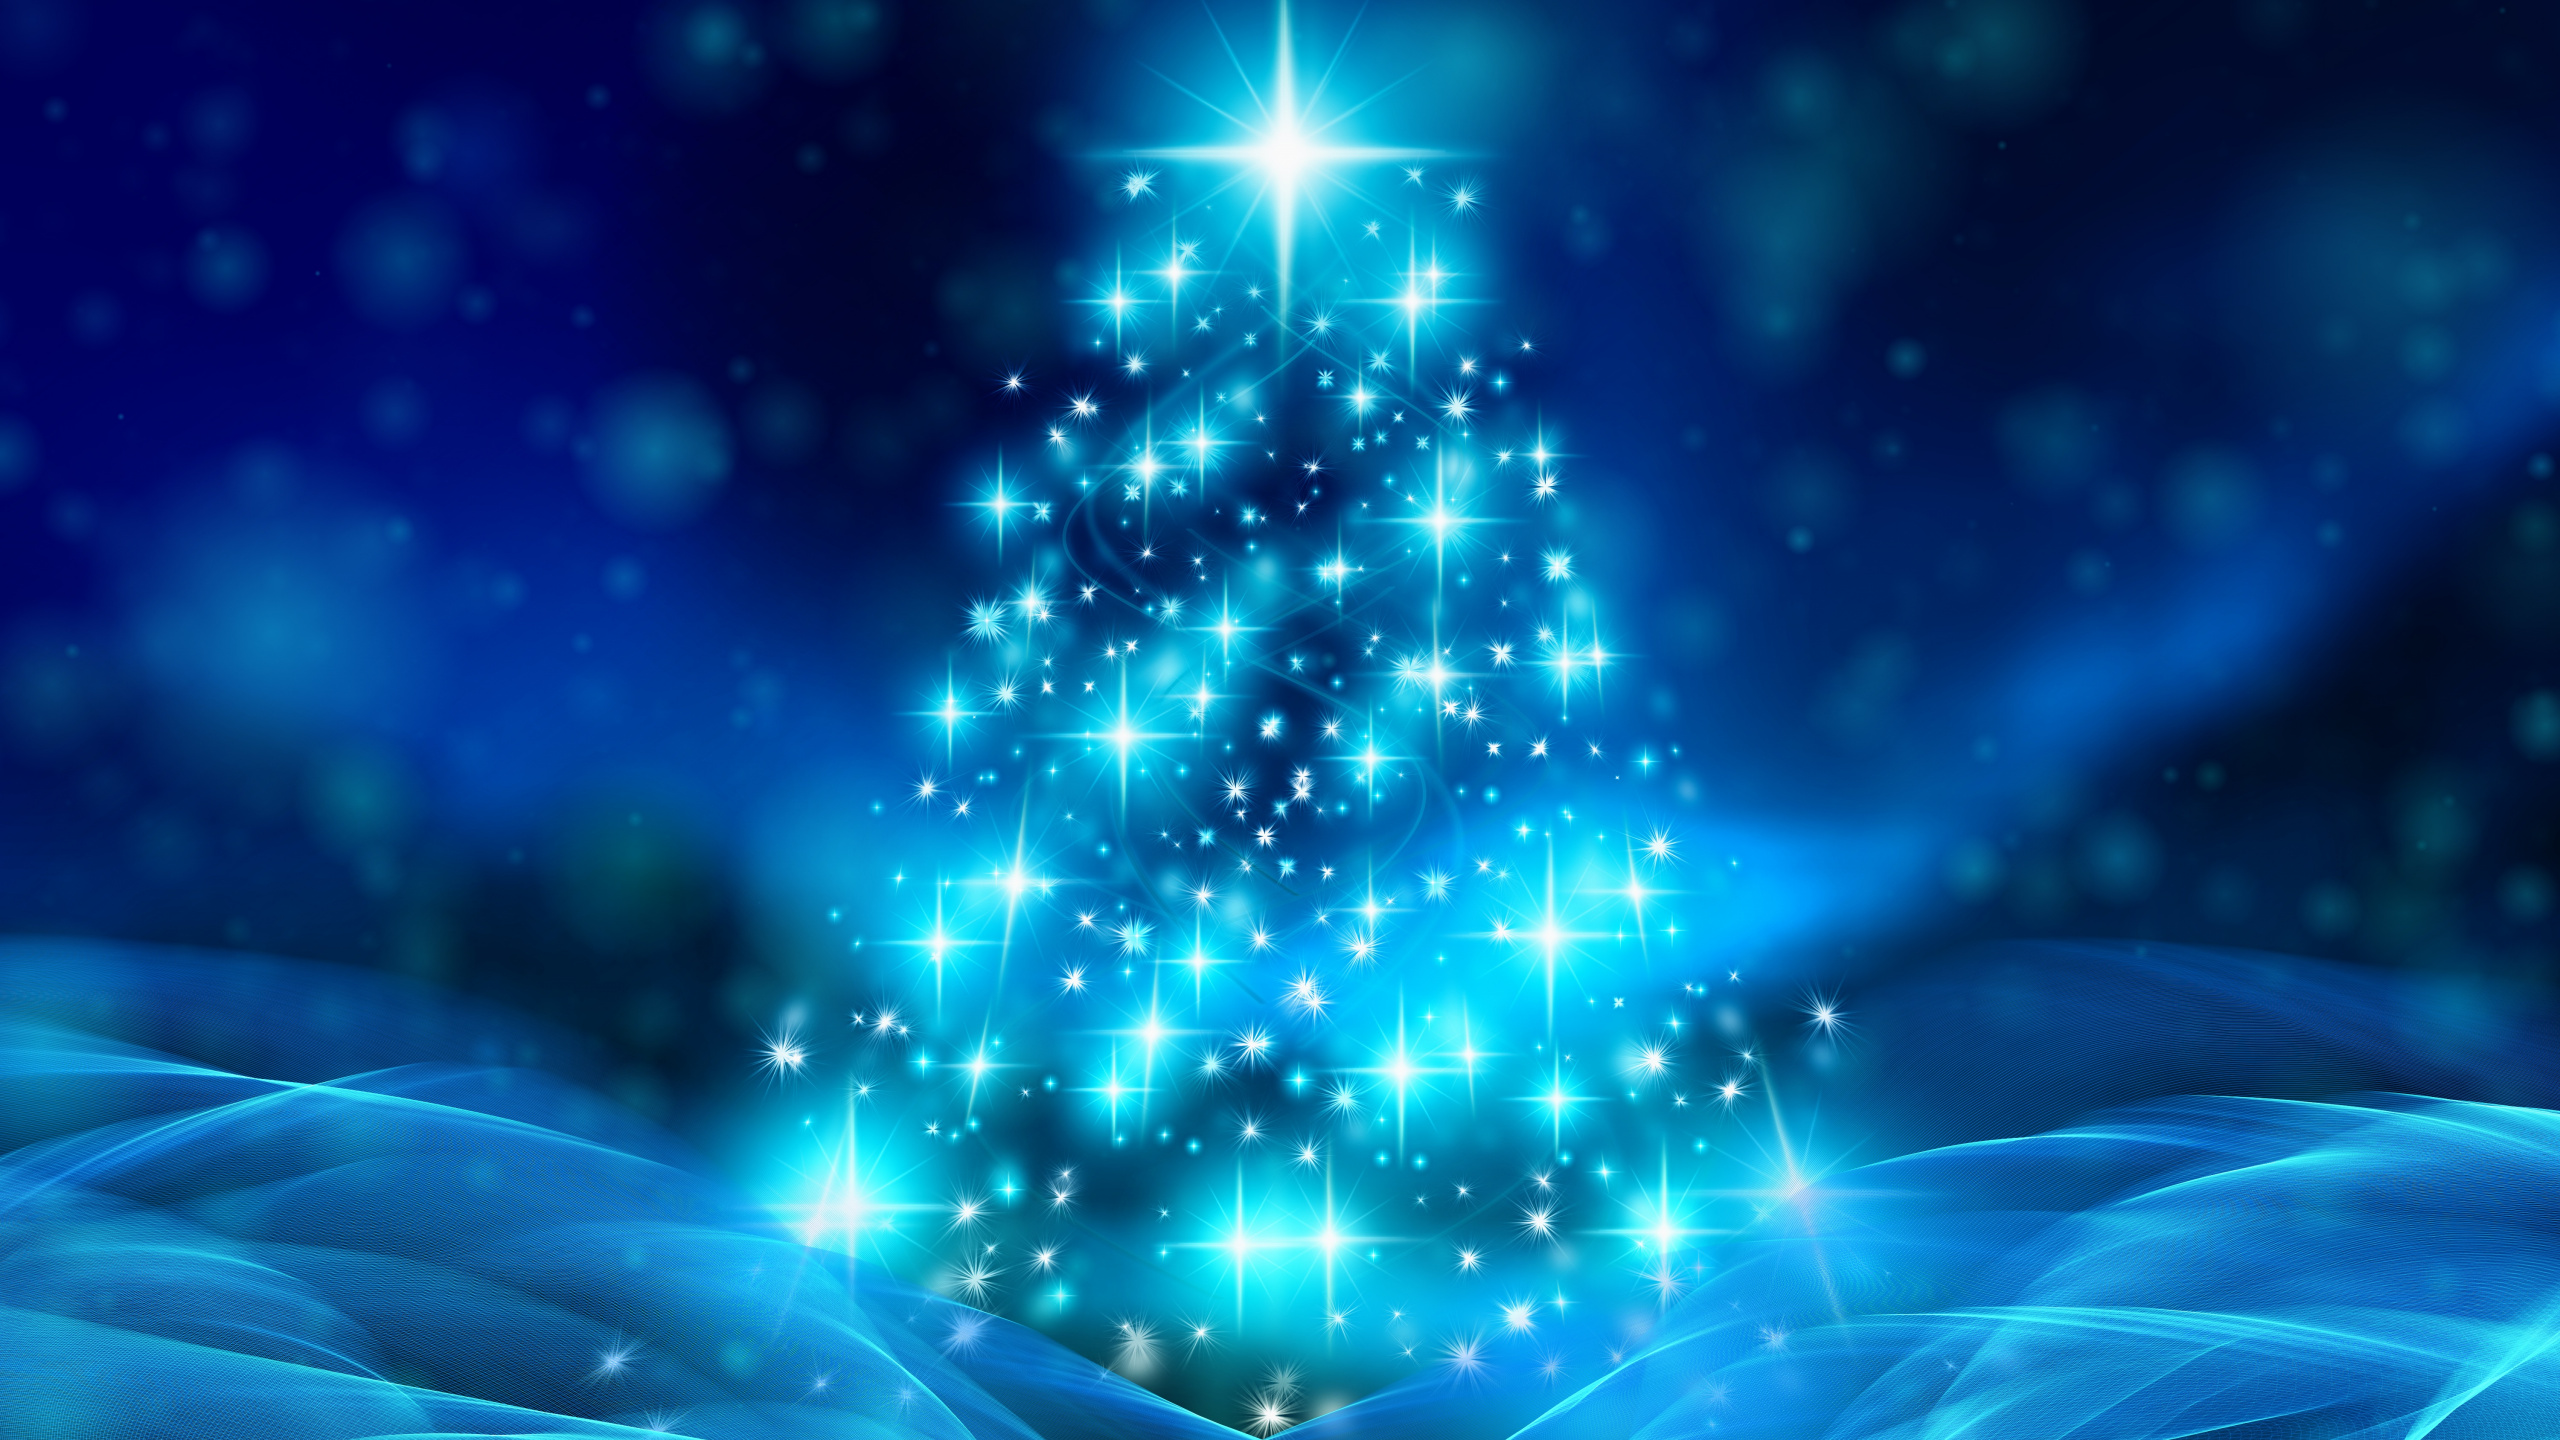 El Día De Navidad, Decoración de la Navidad, Azul, la Víspera de Navidad, Animación. Wallpaper in 2560x1440 Resolution